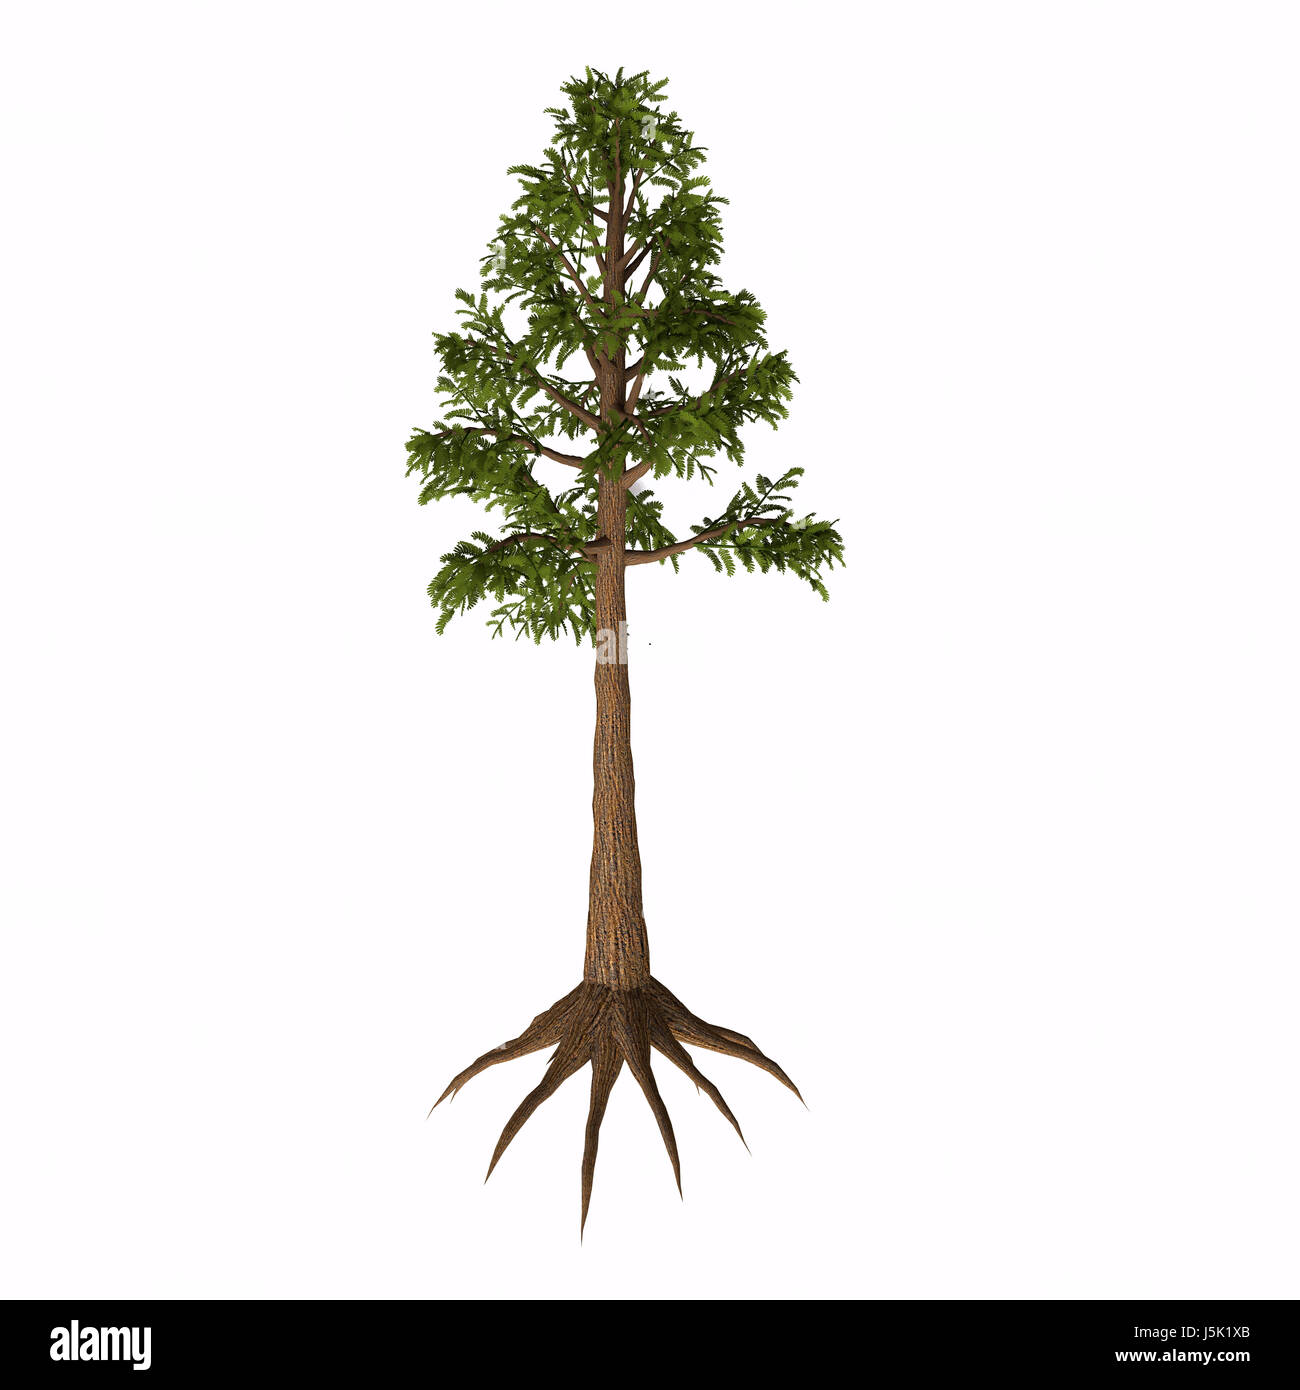 Arbre généalogique sp Archaeopteris Archaeopteris est un genre éteint d'arbre-comme les plantes avec des feuilles de fougère qui vivait dans la période du dévonien au Carbonifère. Banque D'Images